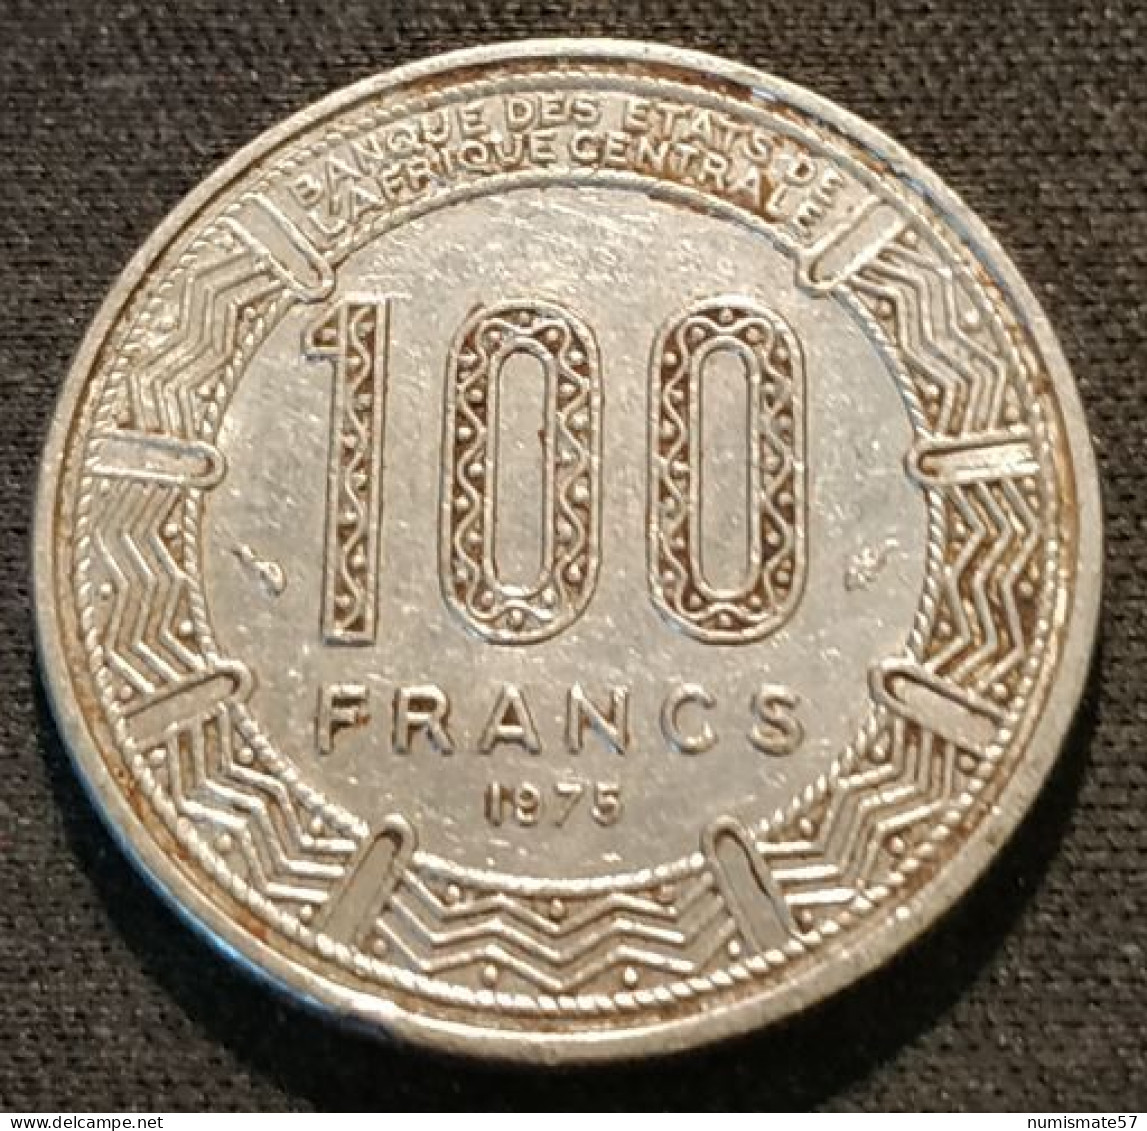 CAMEROUN - 100 FRANCS 1975 - KM 17 - Kamerun